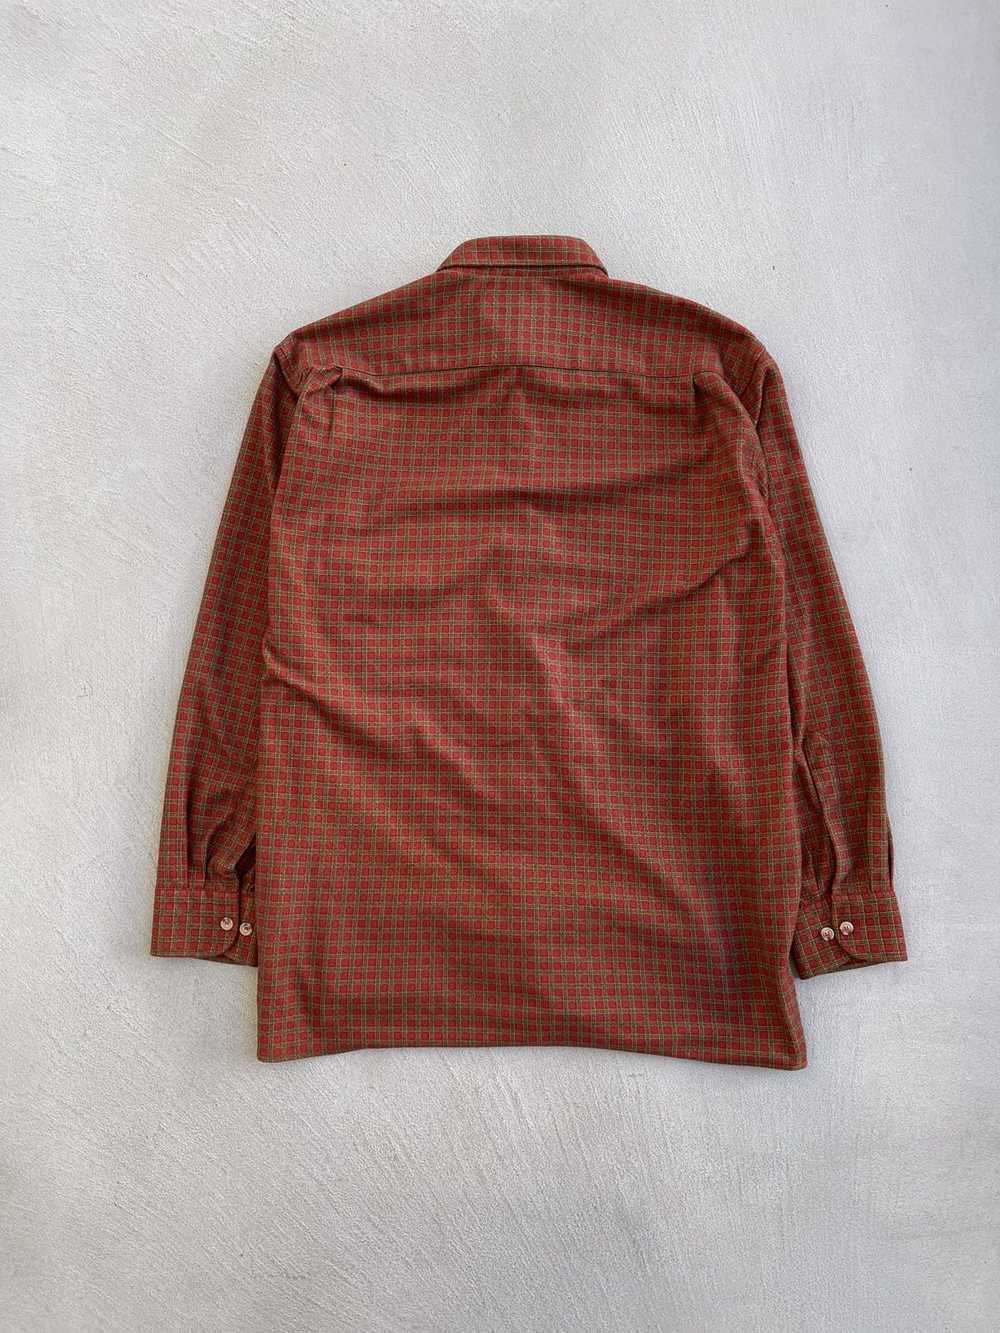 Vintage 1980s Orvis Pocket Flannel Shirt - image 4